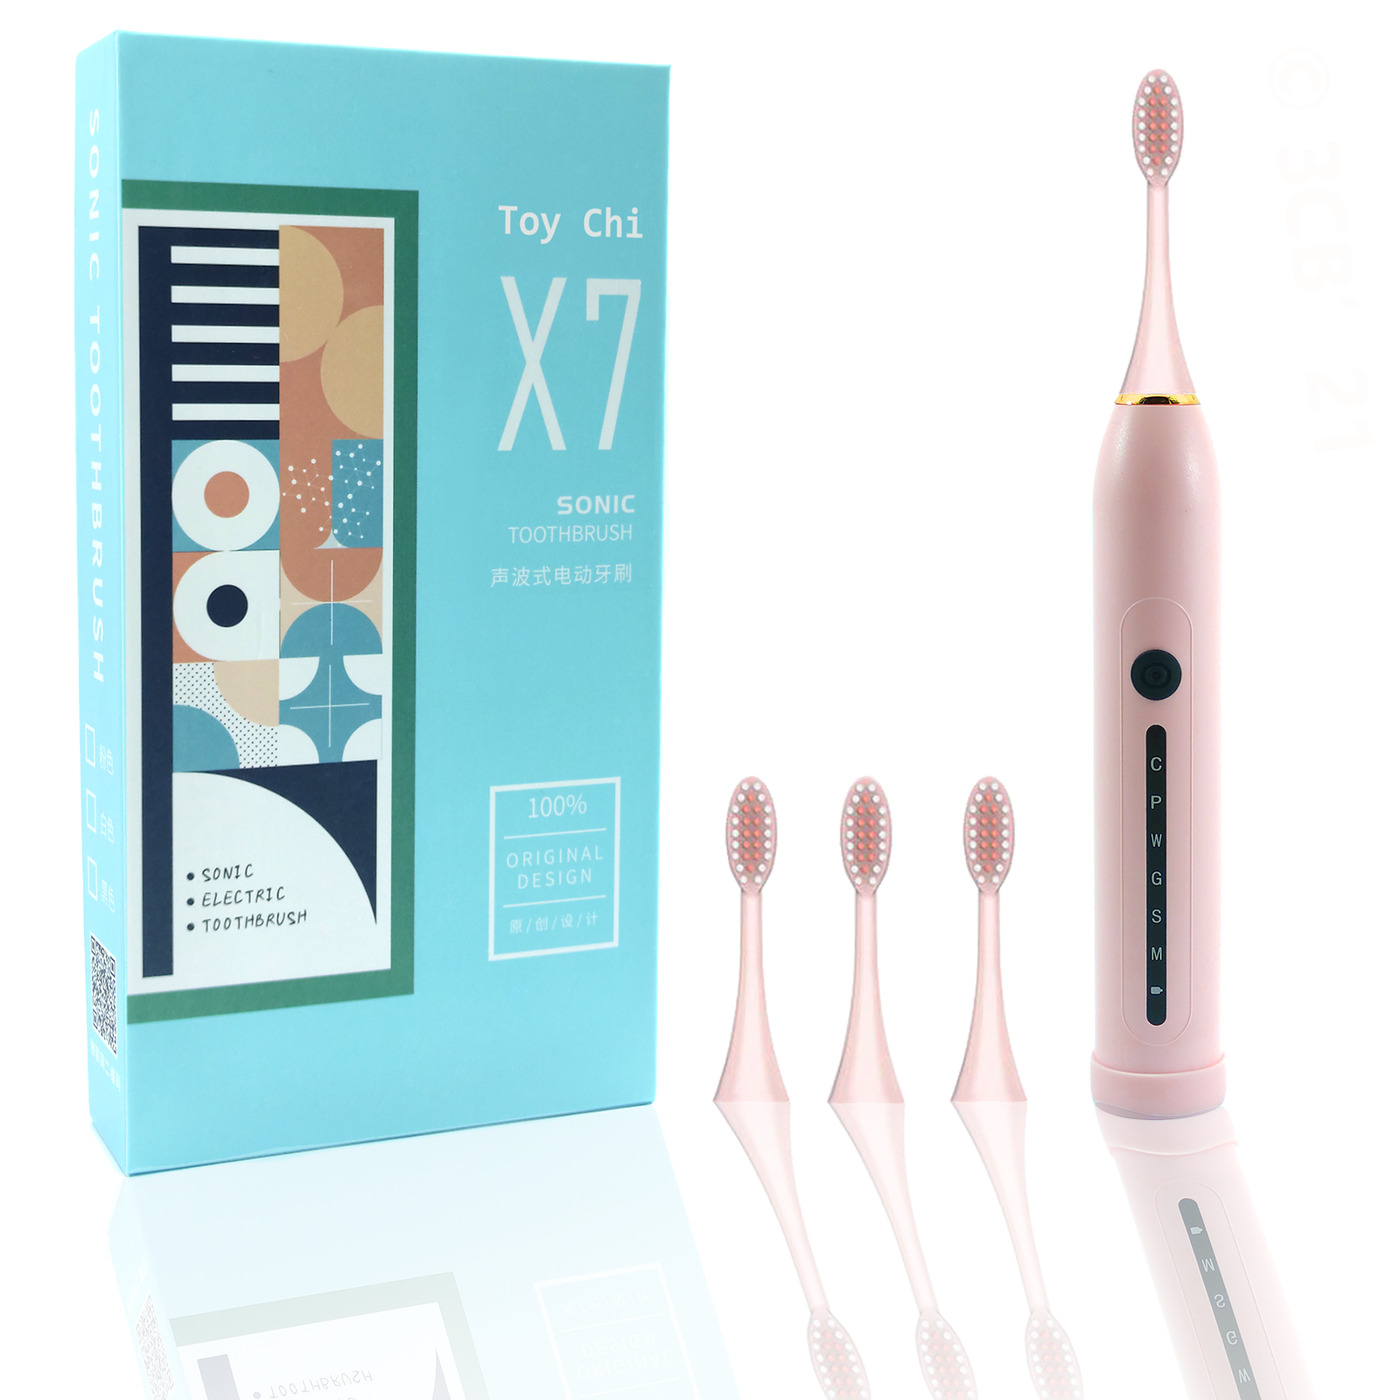 Электрическая зубная щетка ультразвуковая Toy Chi X7 SONIC Toothbrush, розовая электрическая зубная щетка xiaomi soocas sonic electric toothbrush v2 pink